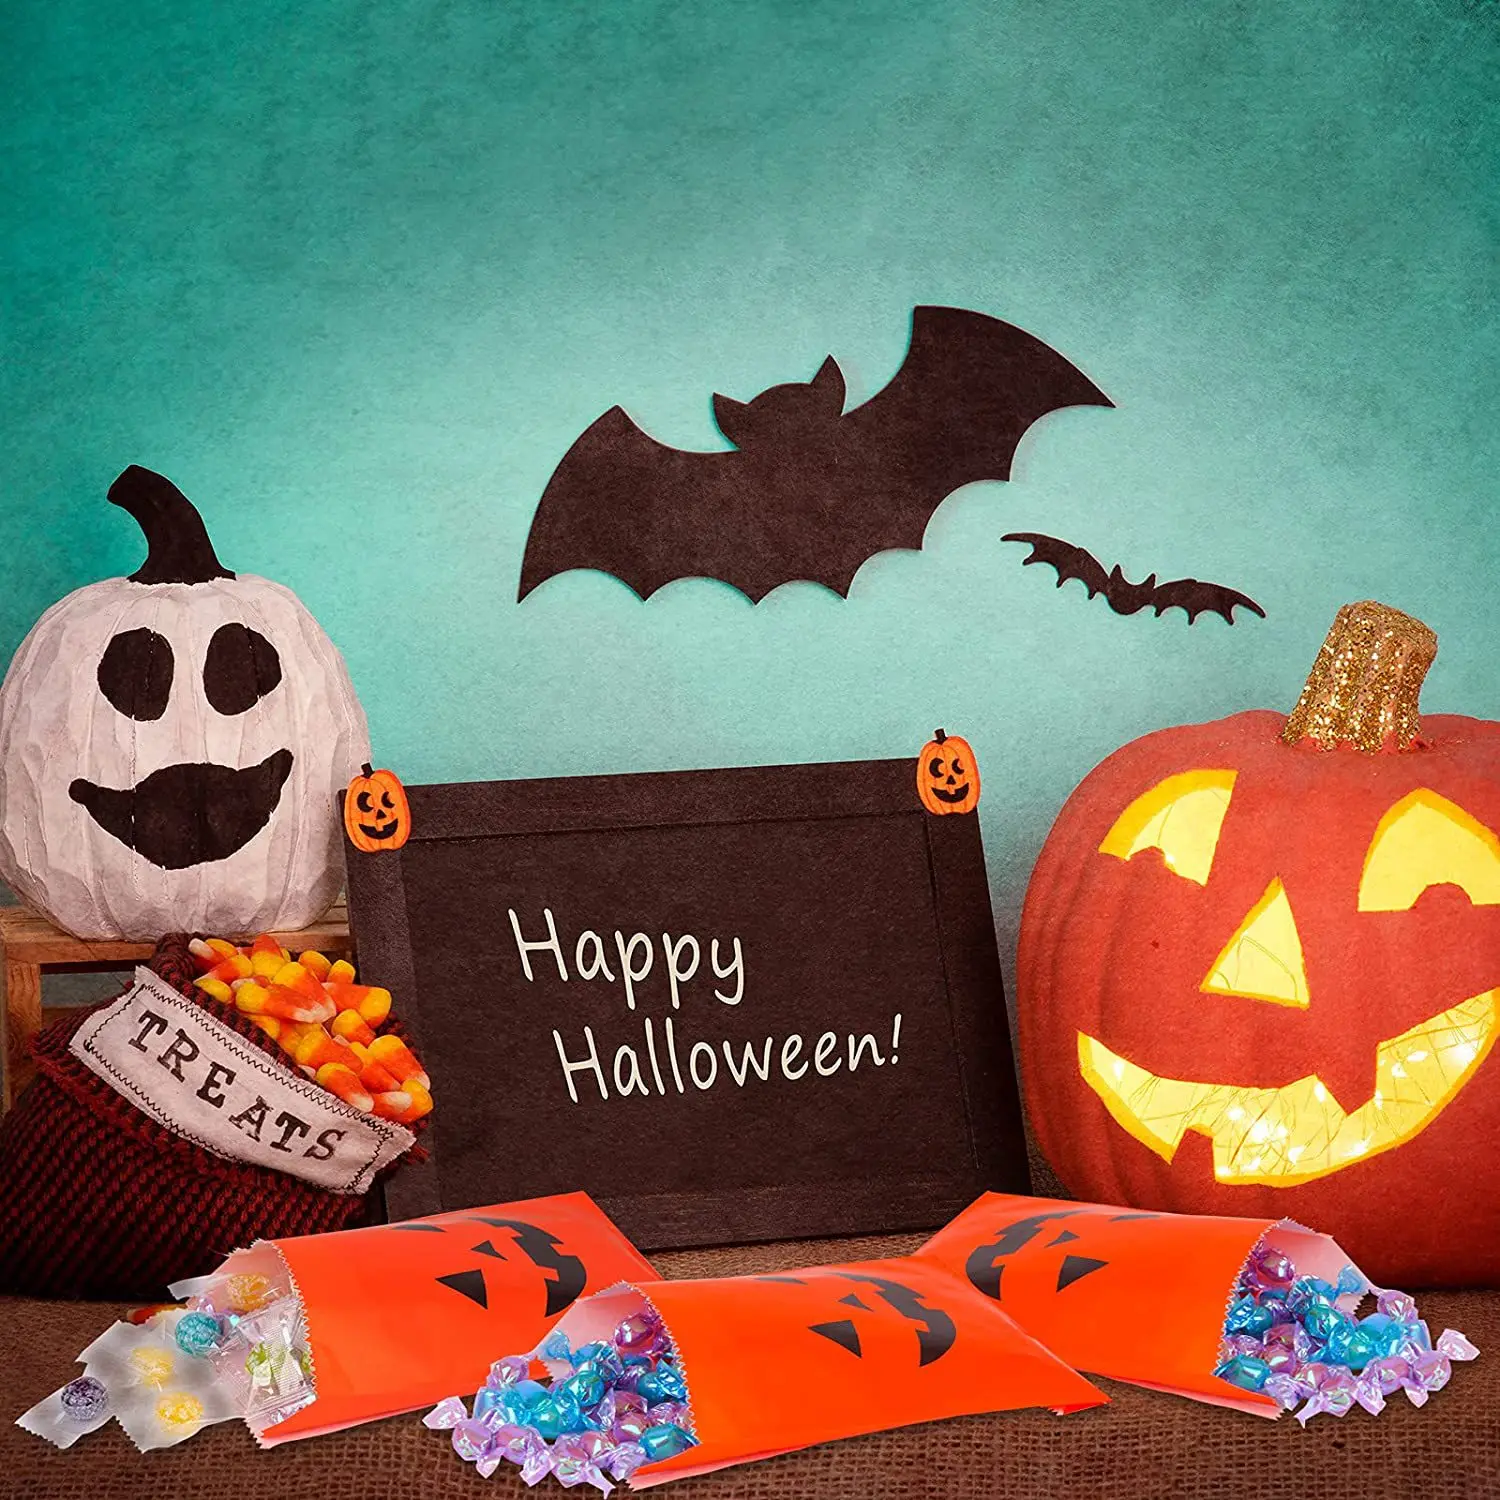 25pcs Halloween Papír Ajándék Táskák Tök Szellem Édesség Süti Táskák Gyerekeknek Ajándék Csomagolás Zsák Csokit vagy Csalunk Halloween Dekoráció - 2